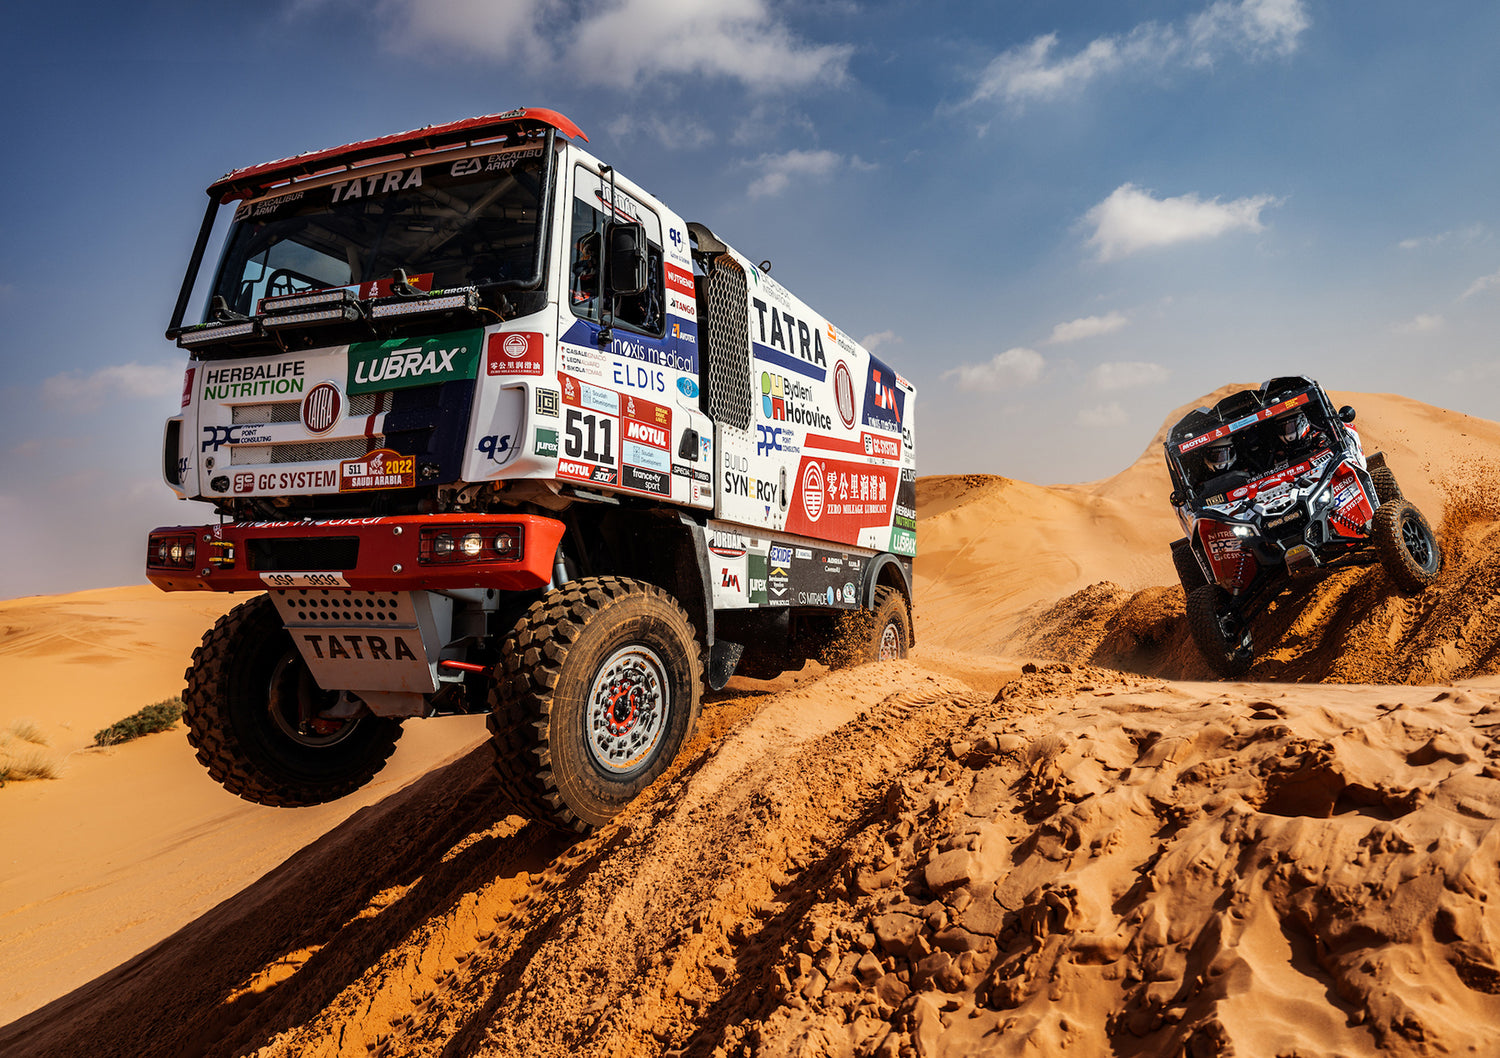 The Rally Dakar